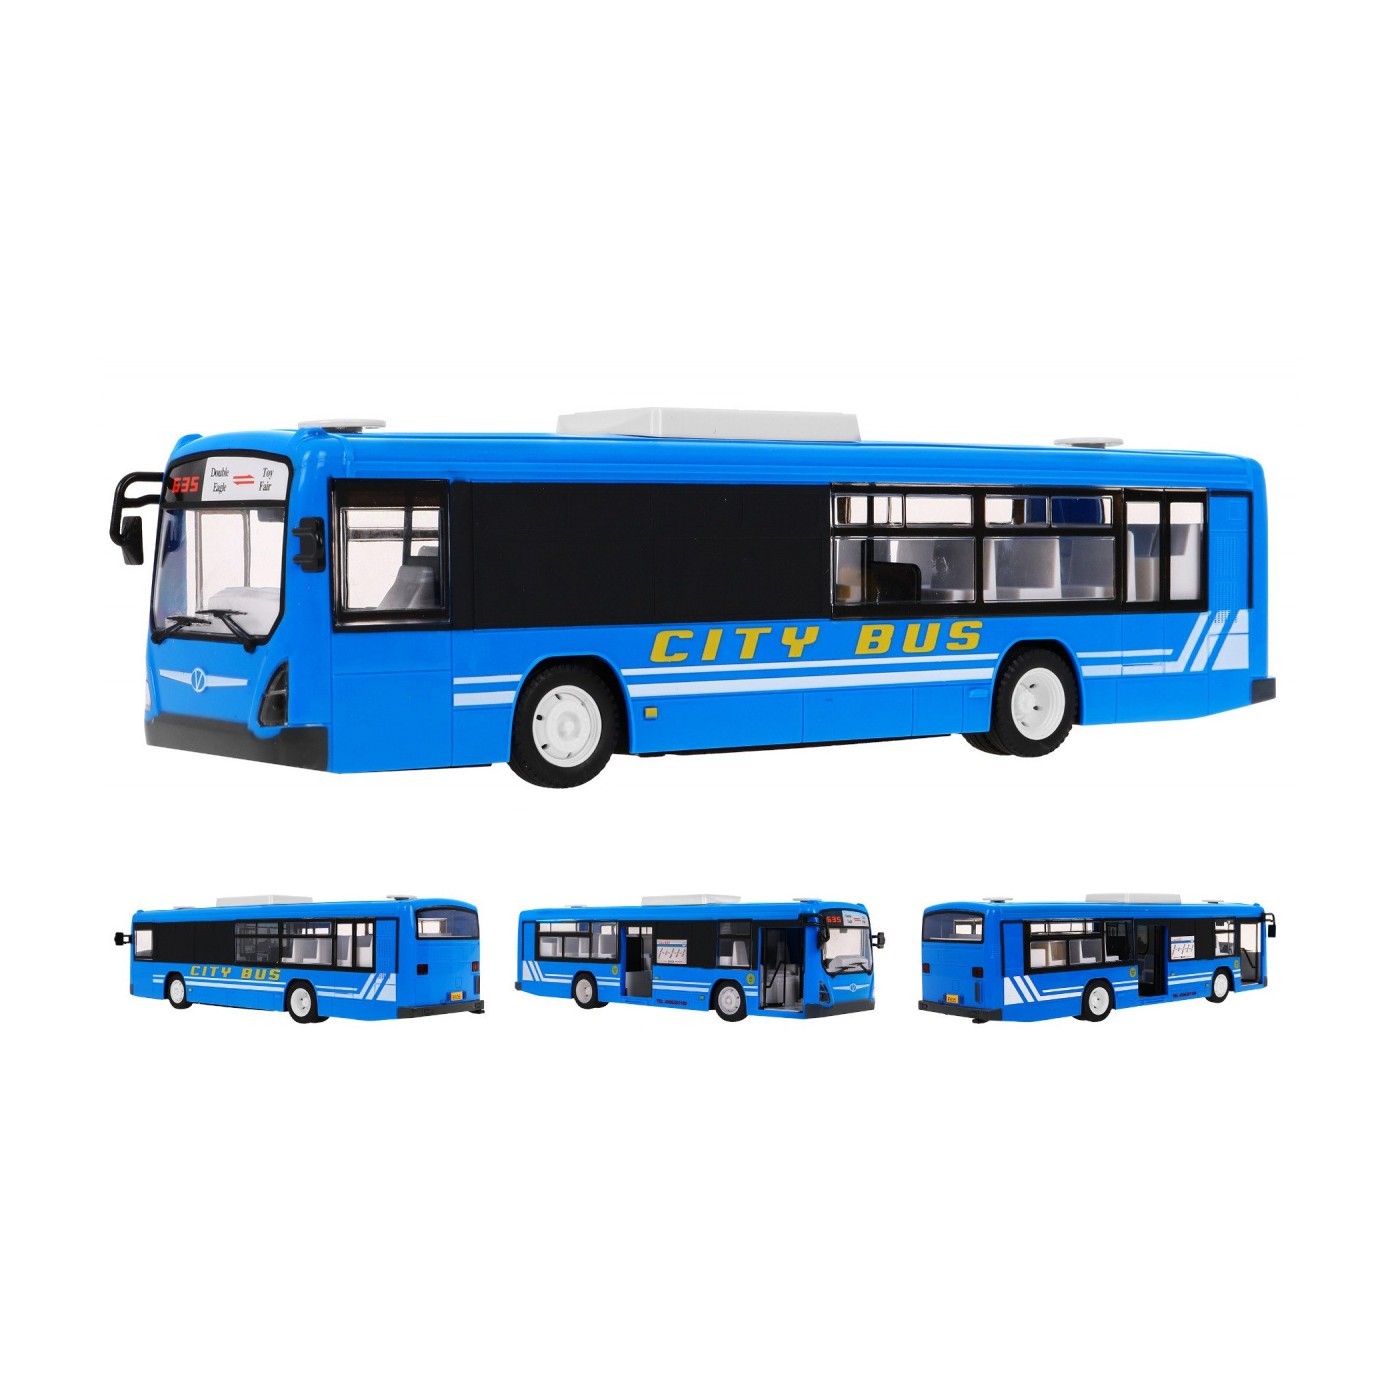 Bus R/C 2.4 G 1:20 Double E